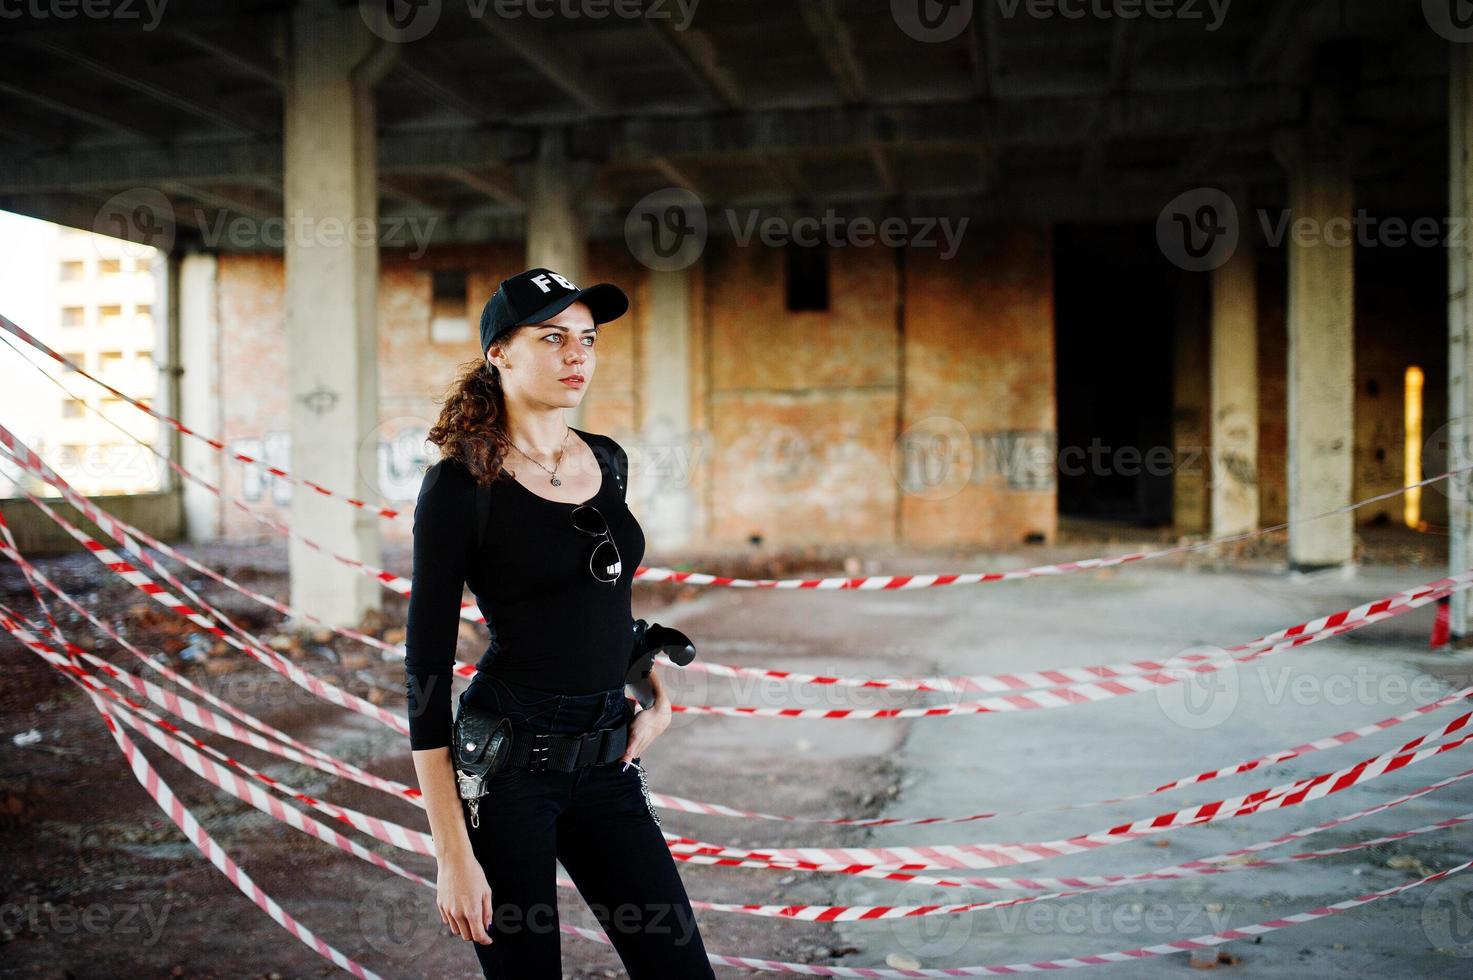 sexy agente femenina del fbi en un lugar abandonado. foto